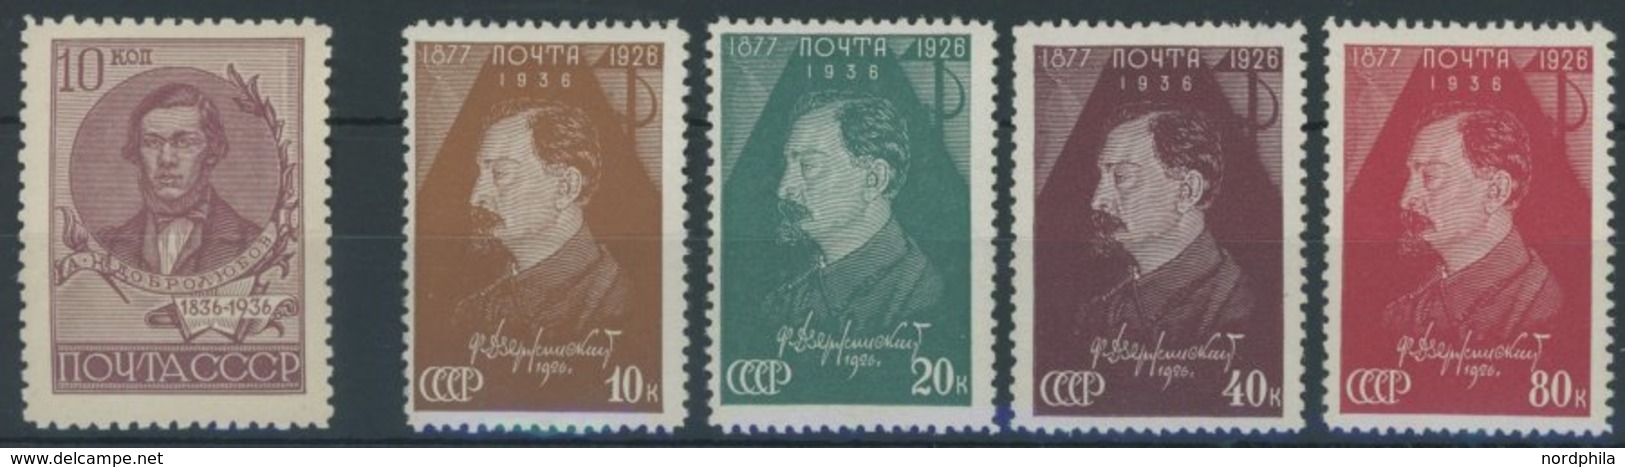 SOWJETUNION 548C,566-69A **, 1936/7, 10 K. Dobroljubow, Gezähnt L 14, Dserschinskij, Gezähnt L 121/2, Postfrisch, 5 Prac - Used Stamps